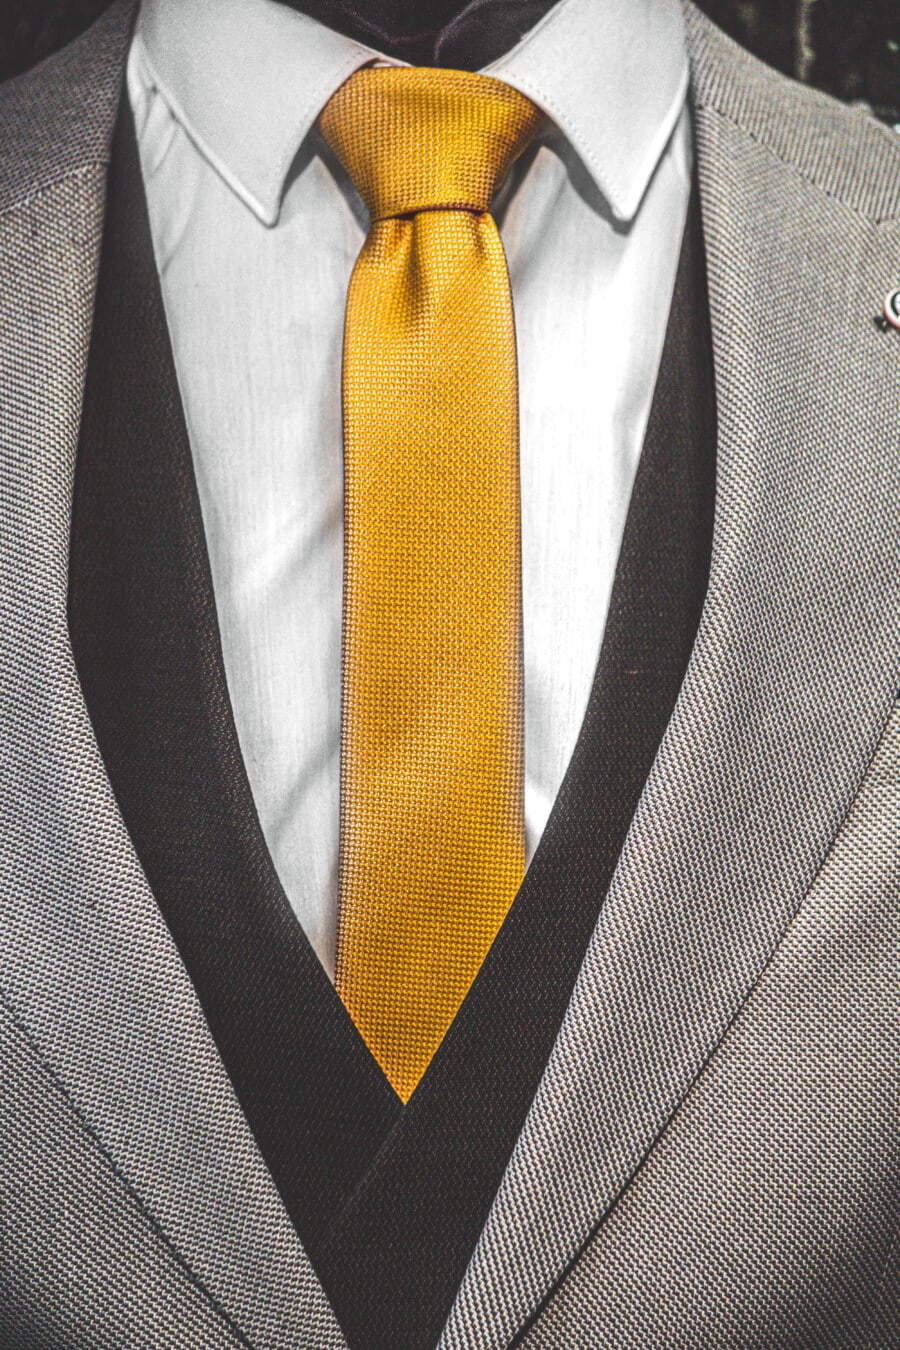 gelb, Krawatte, Smokinganzug, Jacke, schwarz und weiß, Textil-, Baumwolle, Kleidungsstück, Geschäftsmann, Anzug